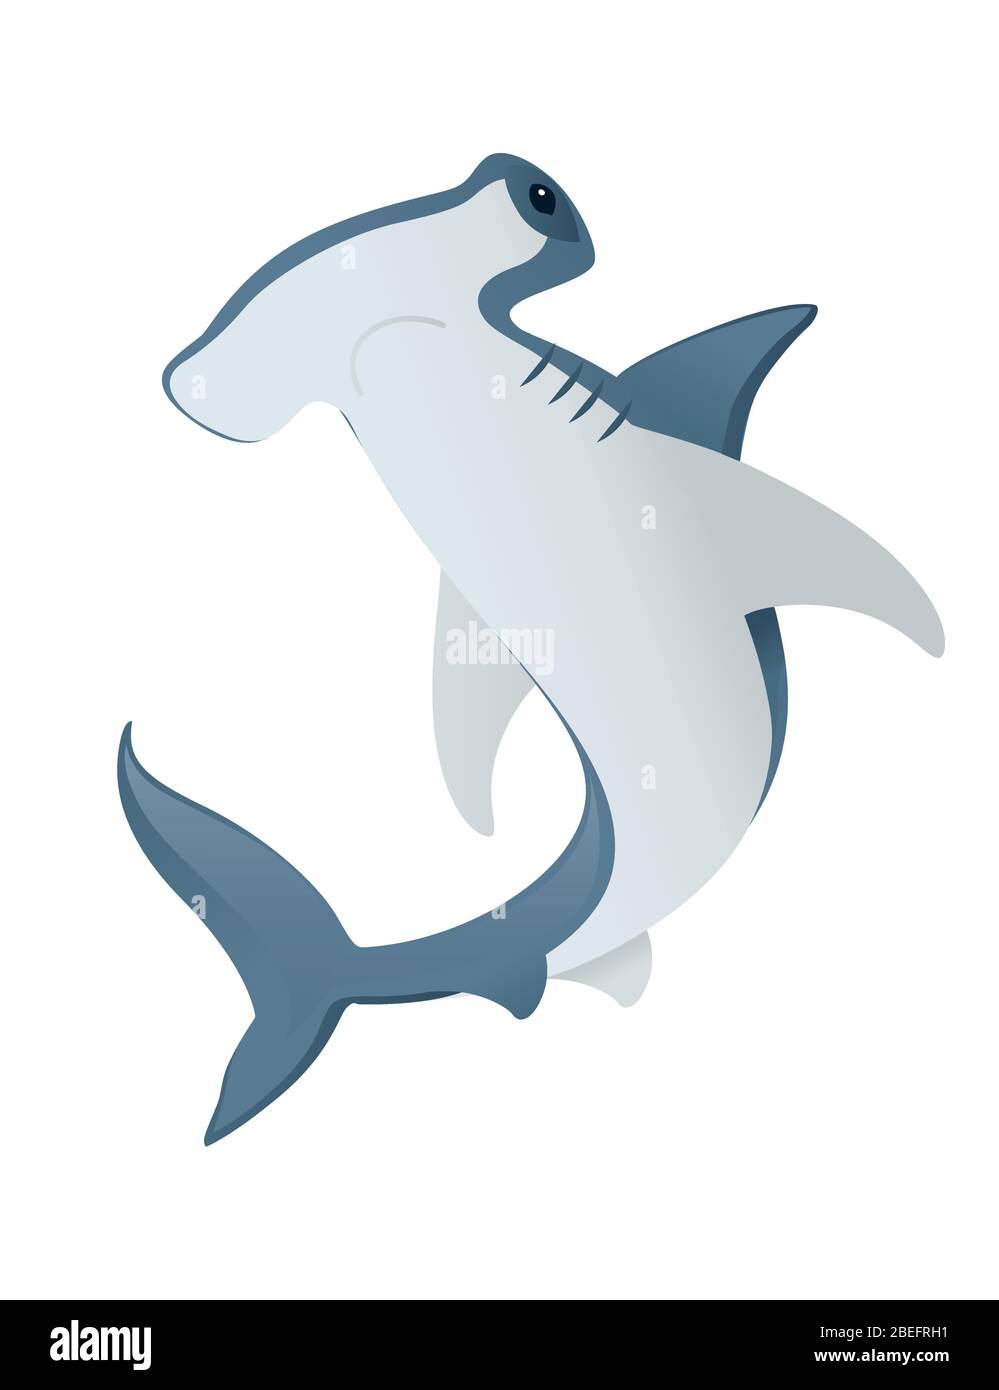 Hammerhai Unterwasser-Hai Riese Tier einfache Cartoon Charakter Design flache Vektor-Illustration auf weißem Hintergrund isoliert Stock Vektor